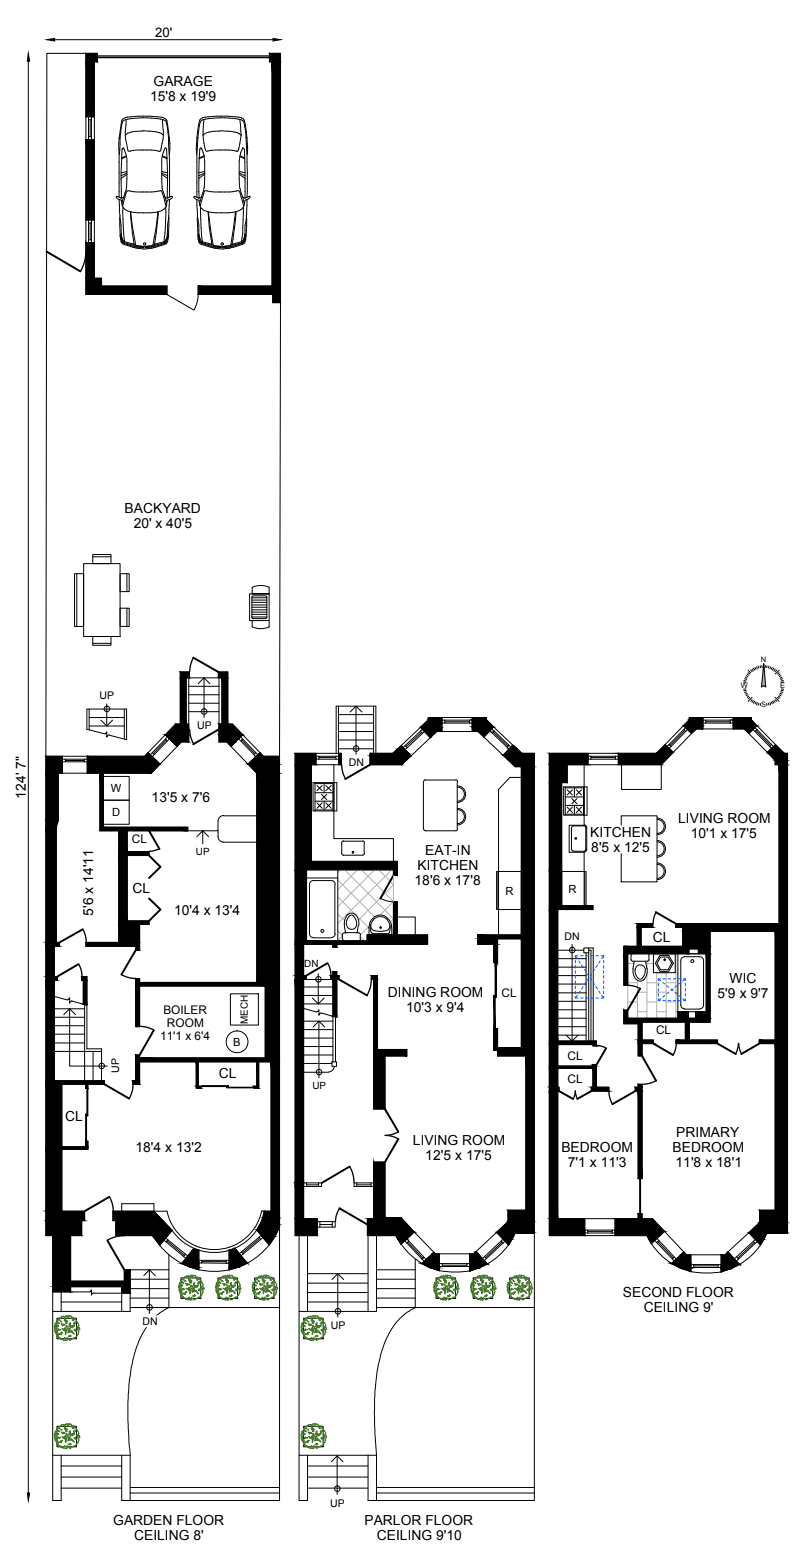 Floorplan for 1445 President Street